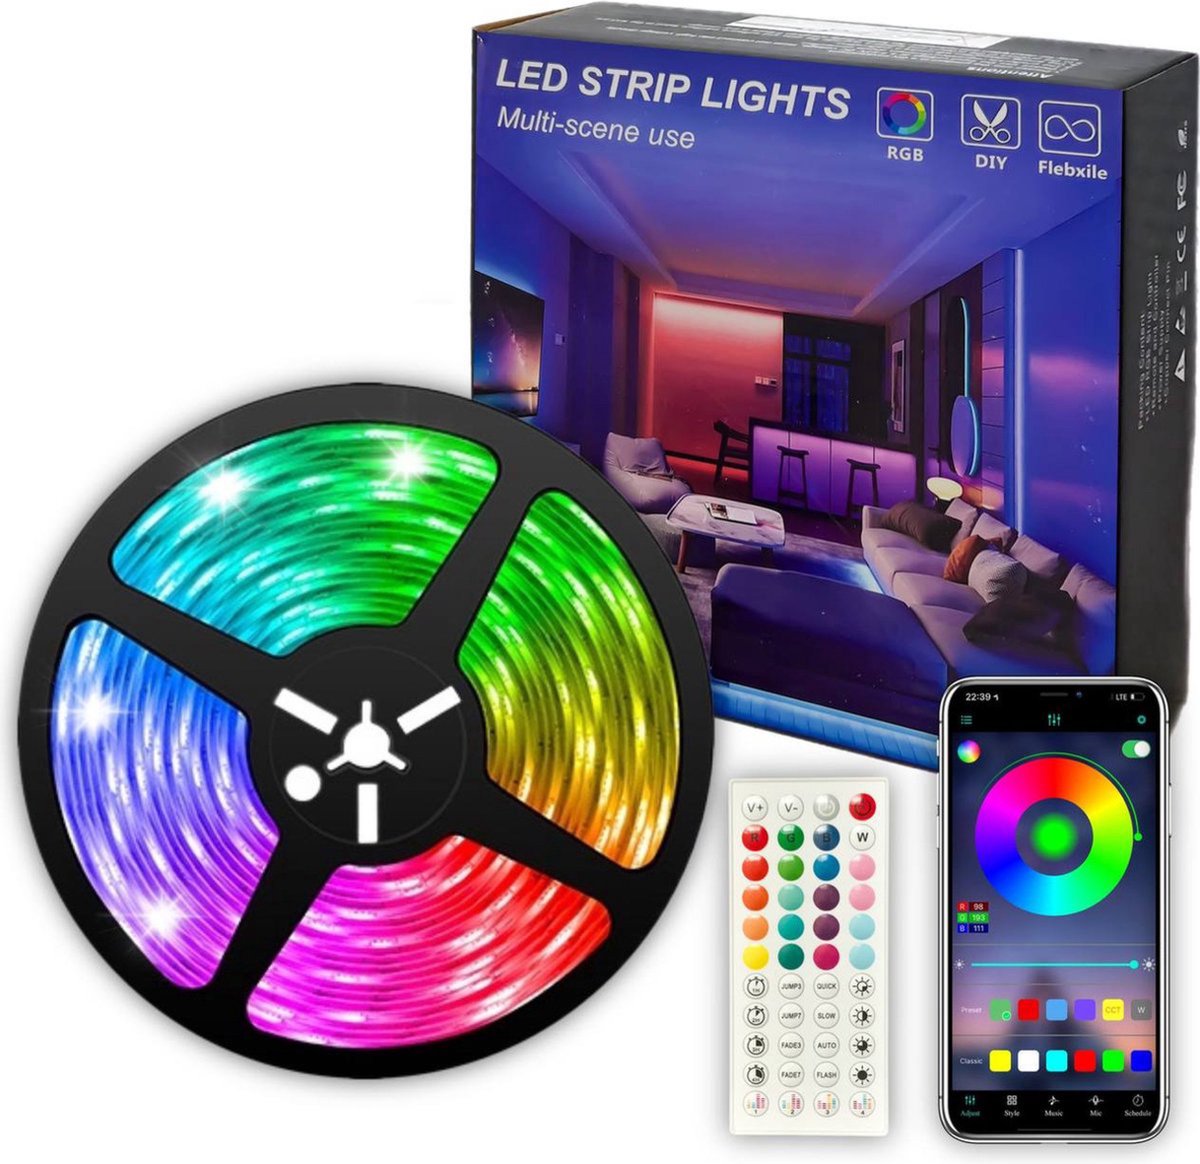 LED strip - 25 Meter - 16 Miljoen Kleuren - Afstandsbediening en App-besturing - Bluetooth - Muziekgestuurd - Zelfklevend